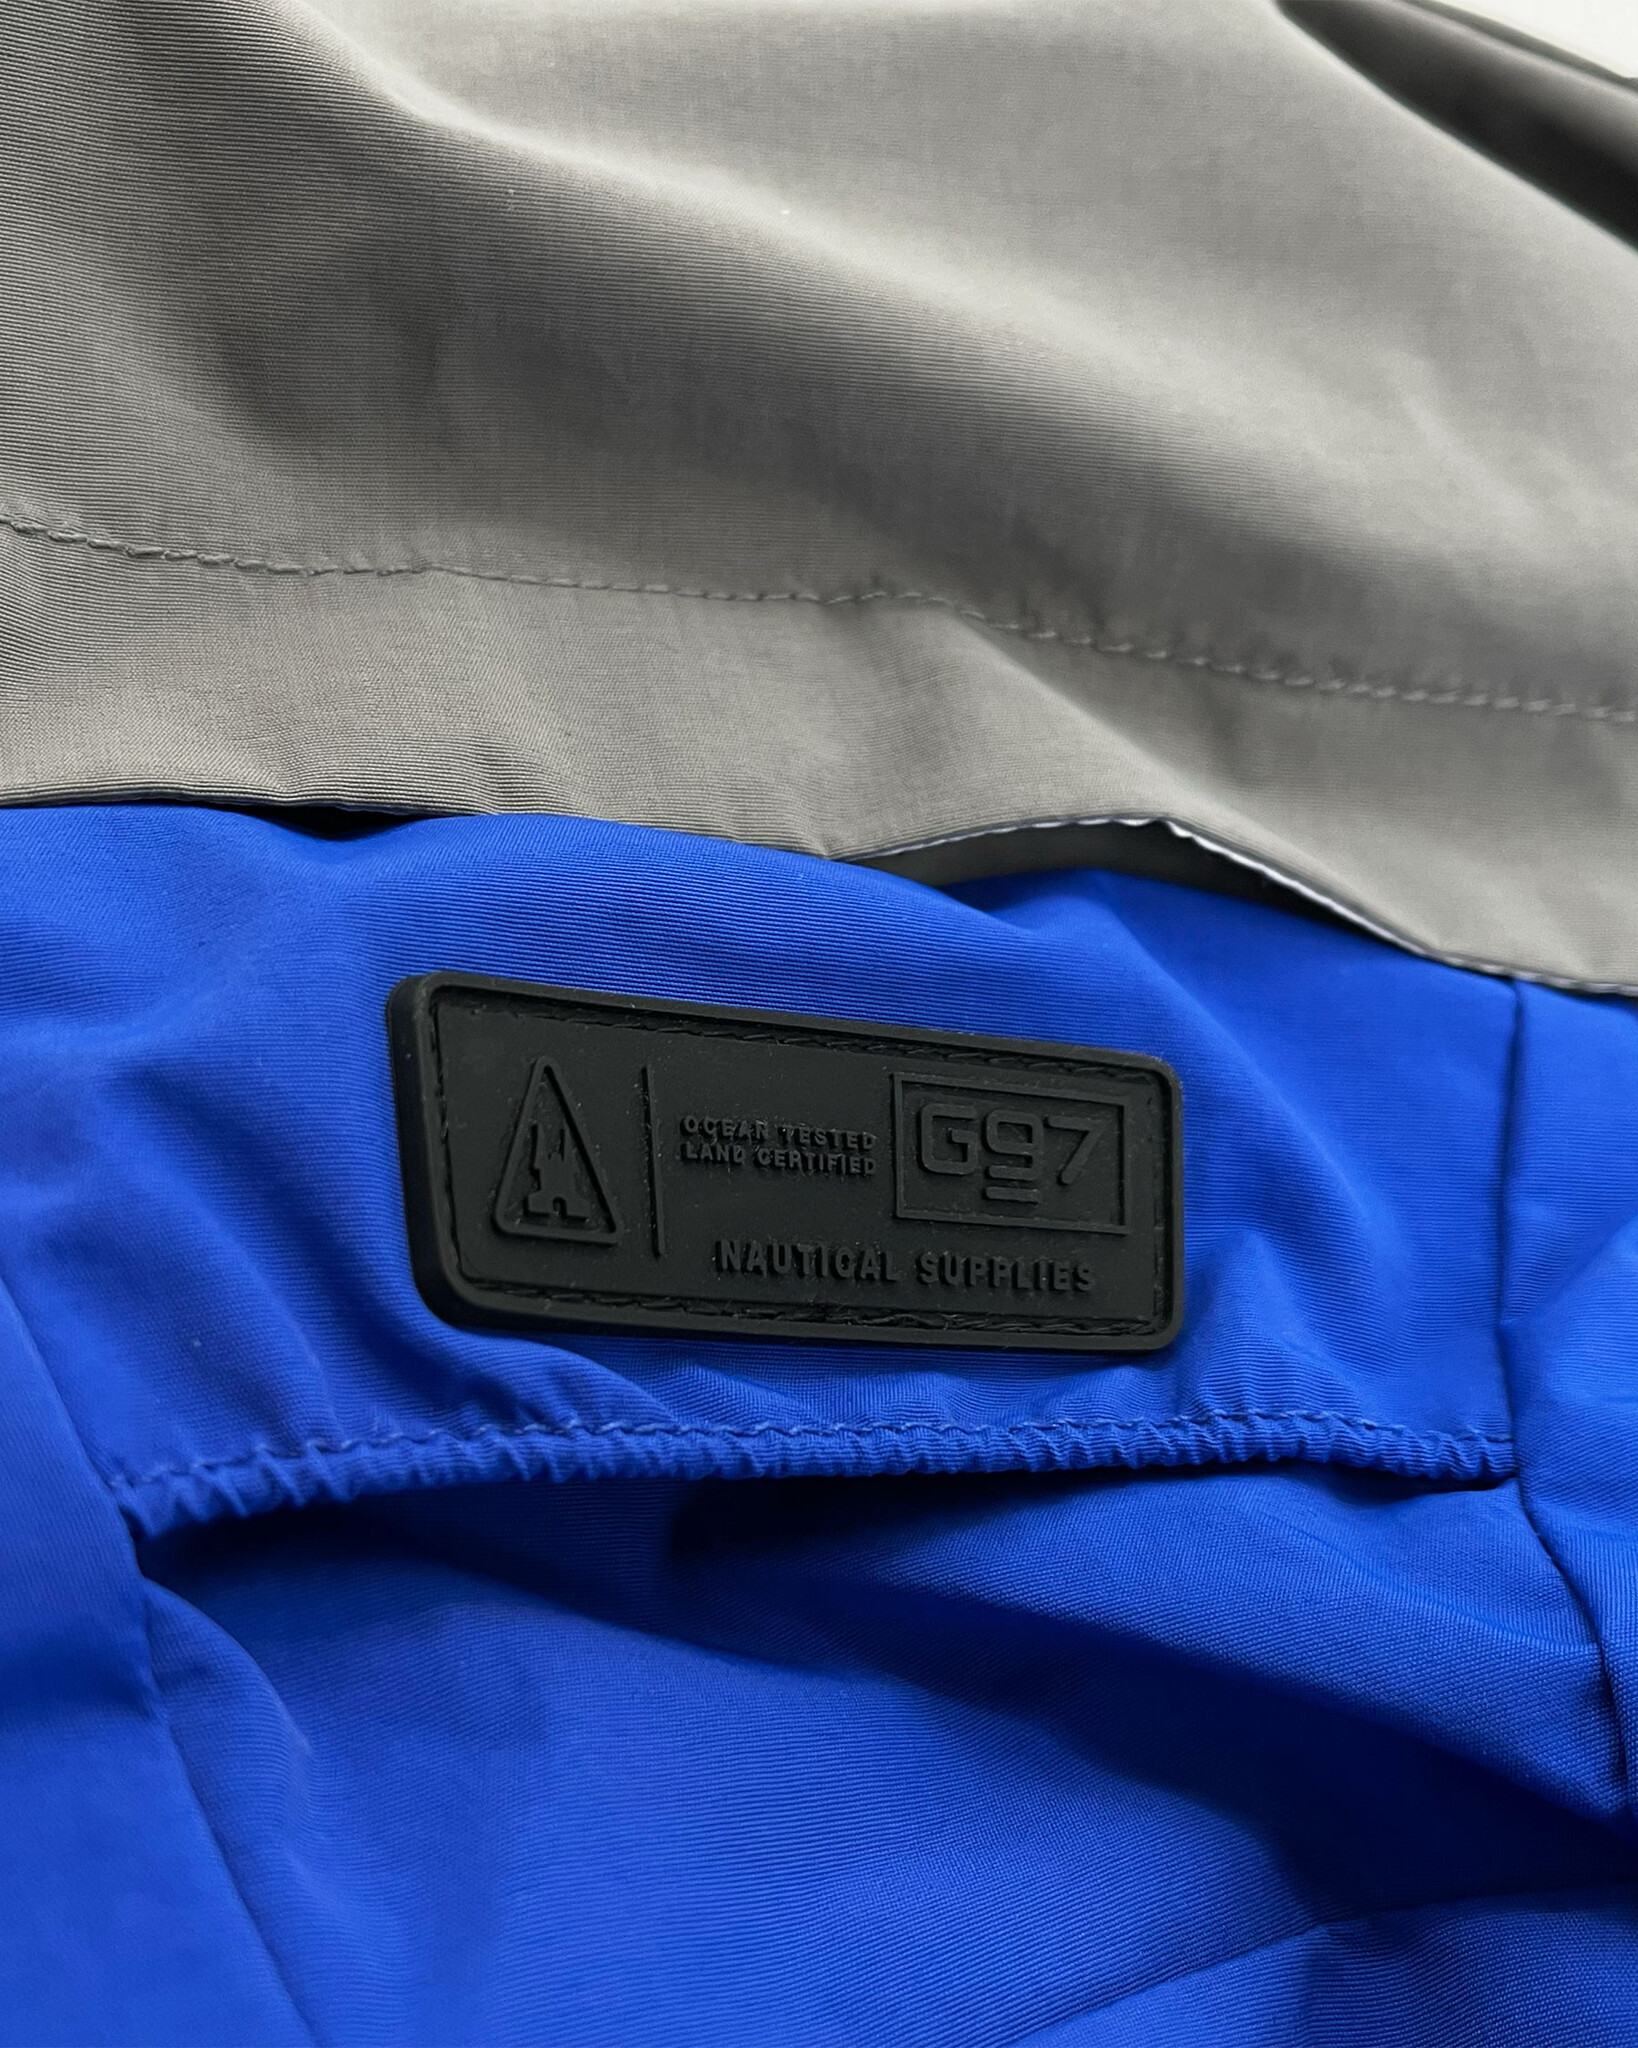 Waterdichte colorblock jas gemaakt van technische 2-laags stof en duurzame REPREVE® padding